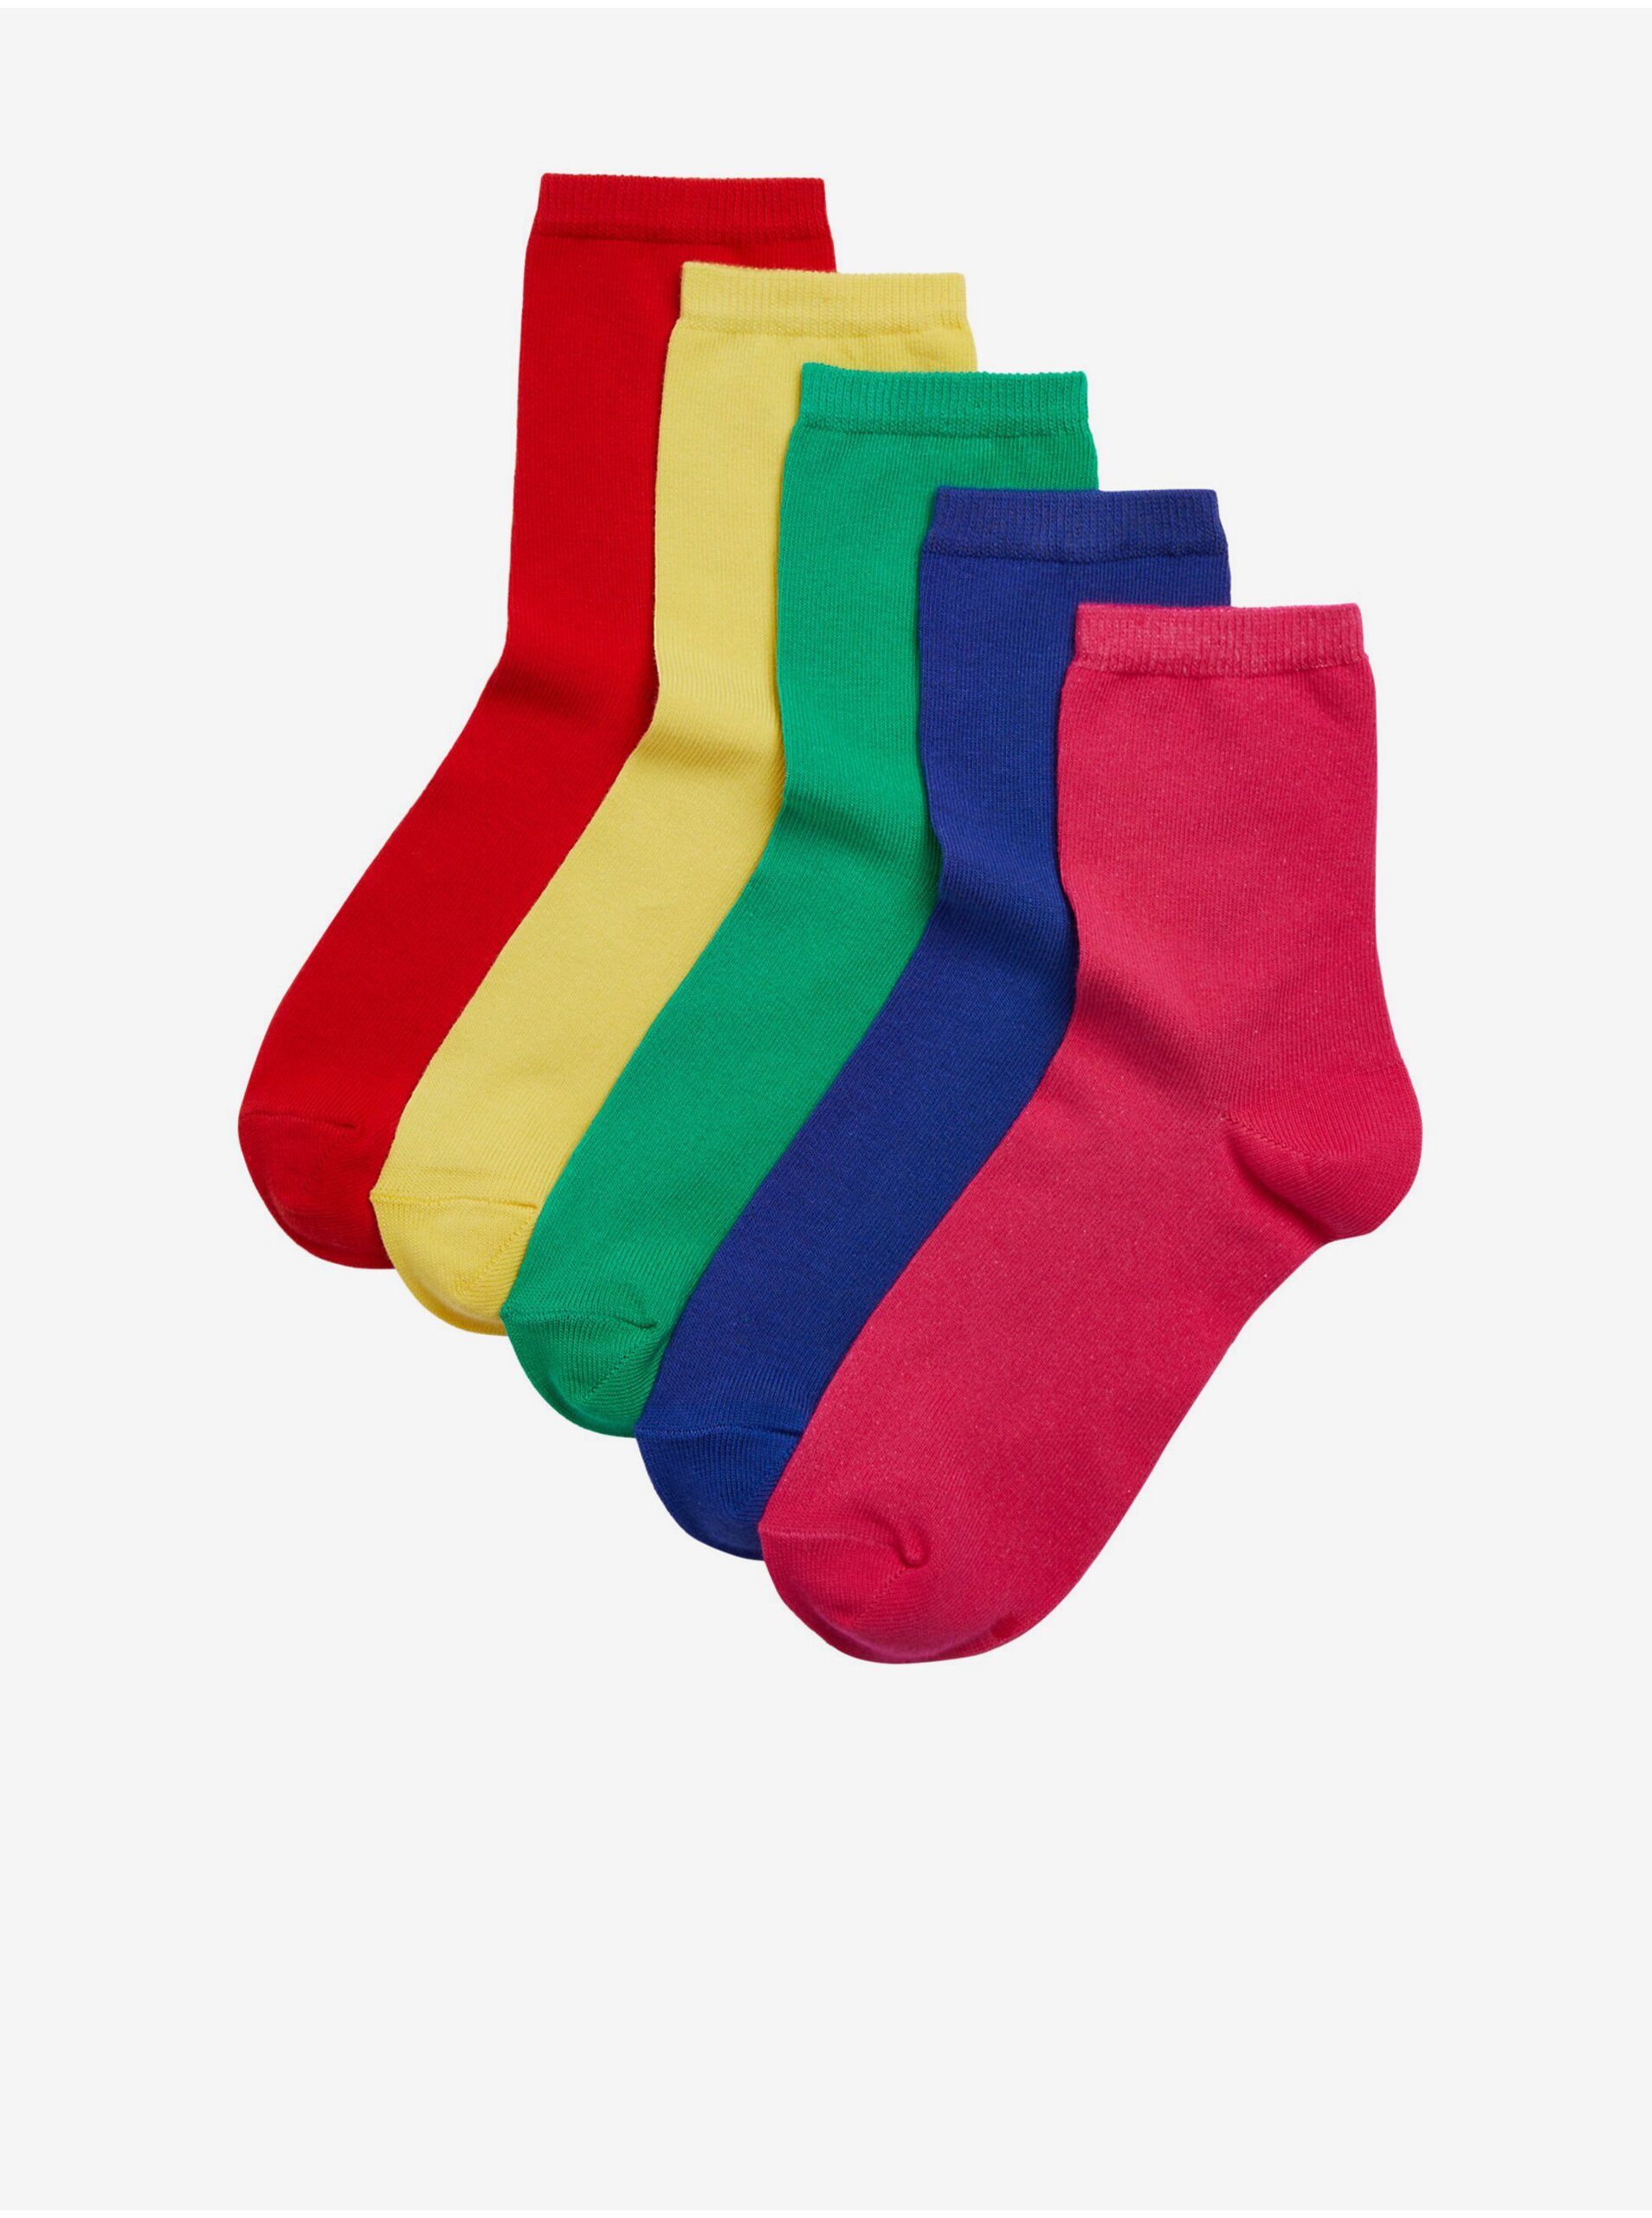 Lacno Súprava piatich párov dámskych ponožiek v červenej, žltej, zelenej, modrej a ružovej farbe Marks & Spencer